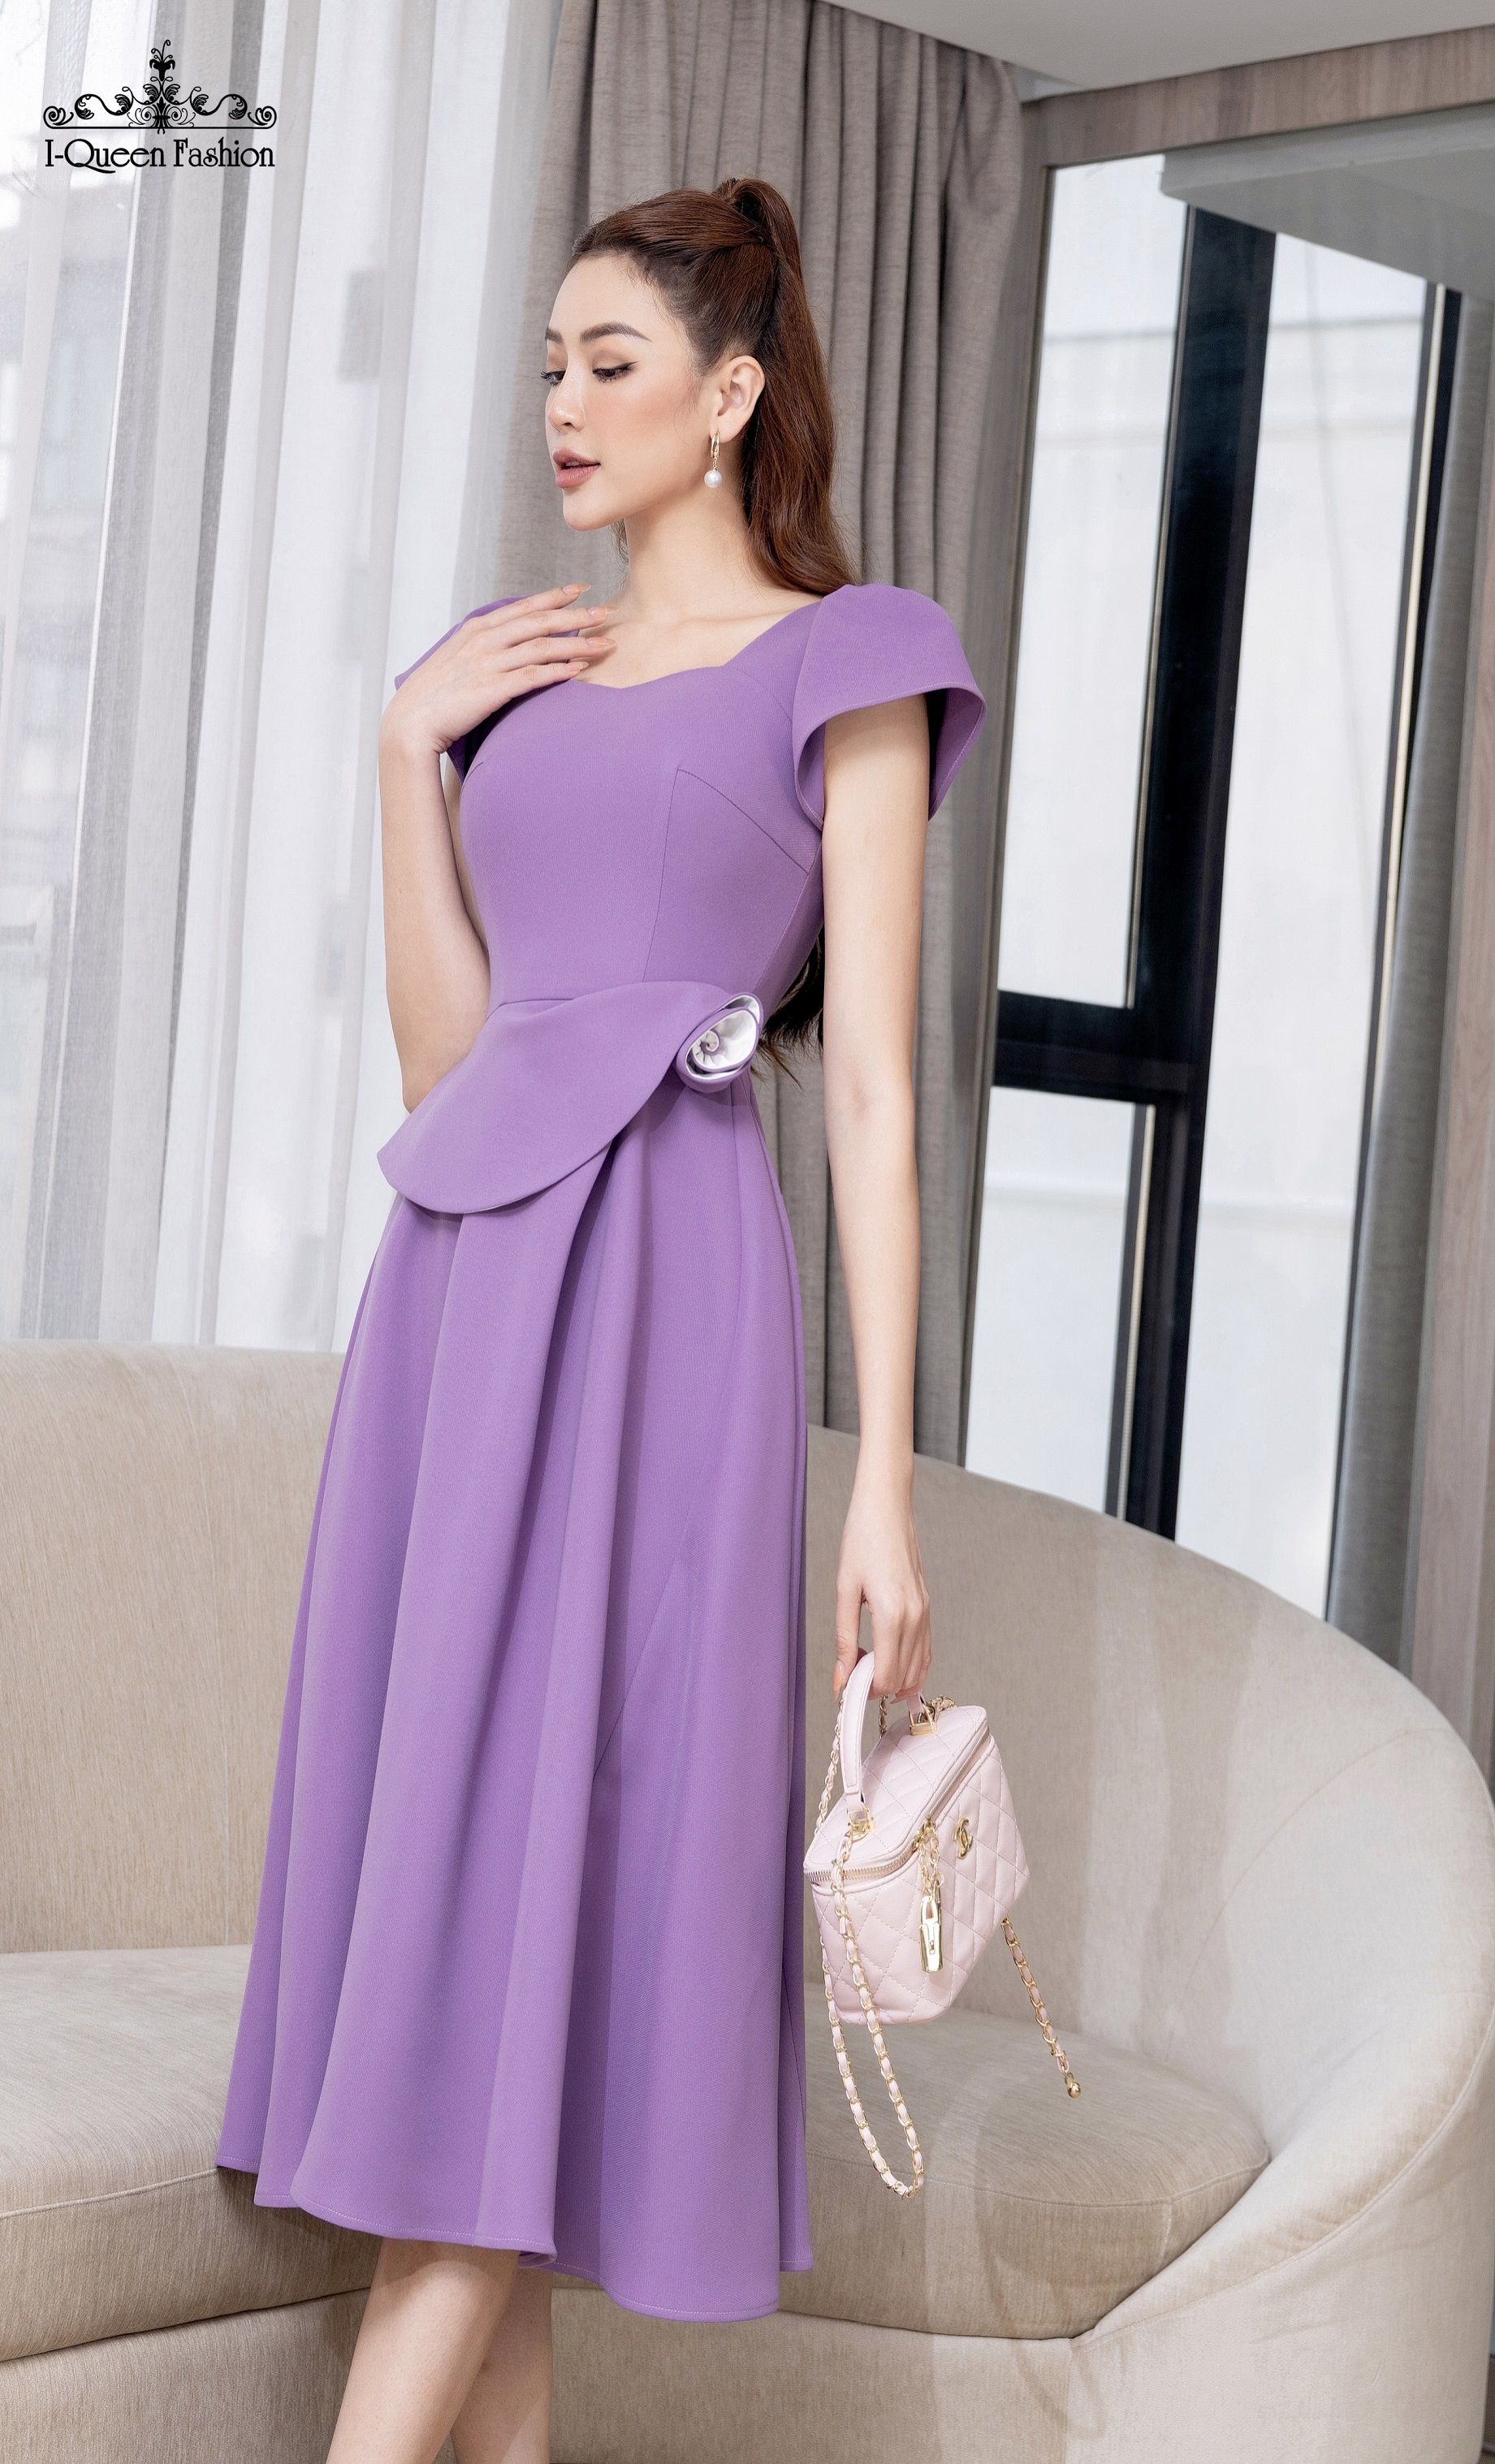 Váy xòe hồng tím hoa eo - 3826